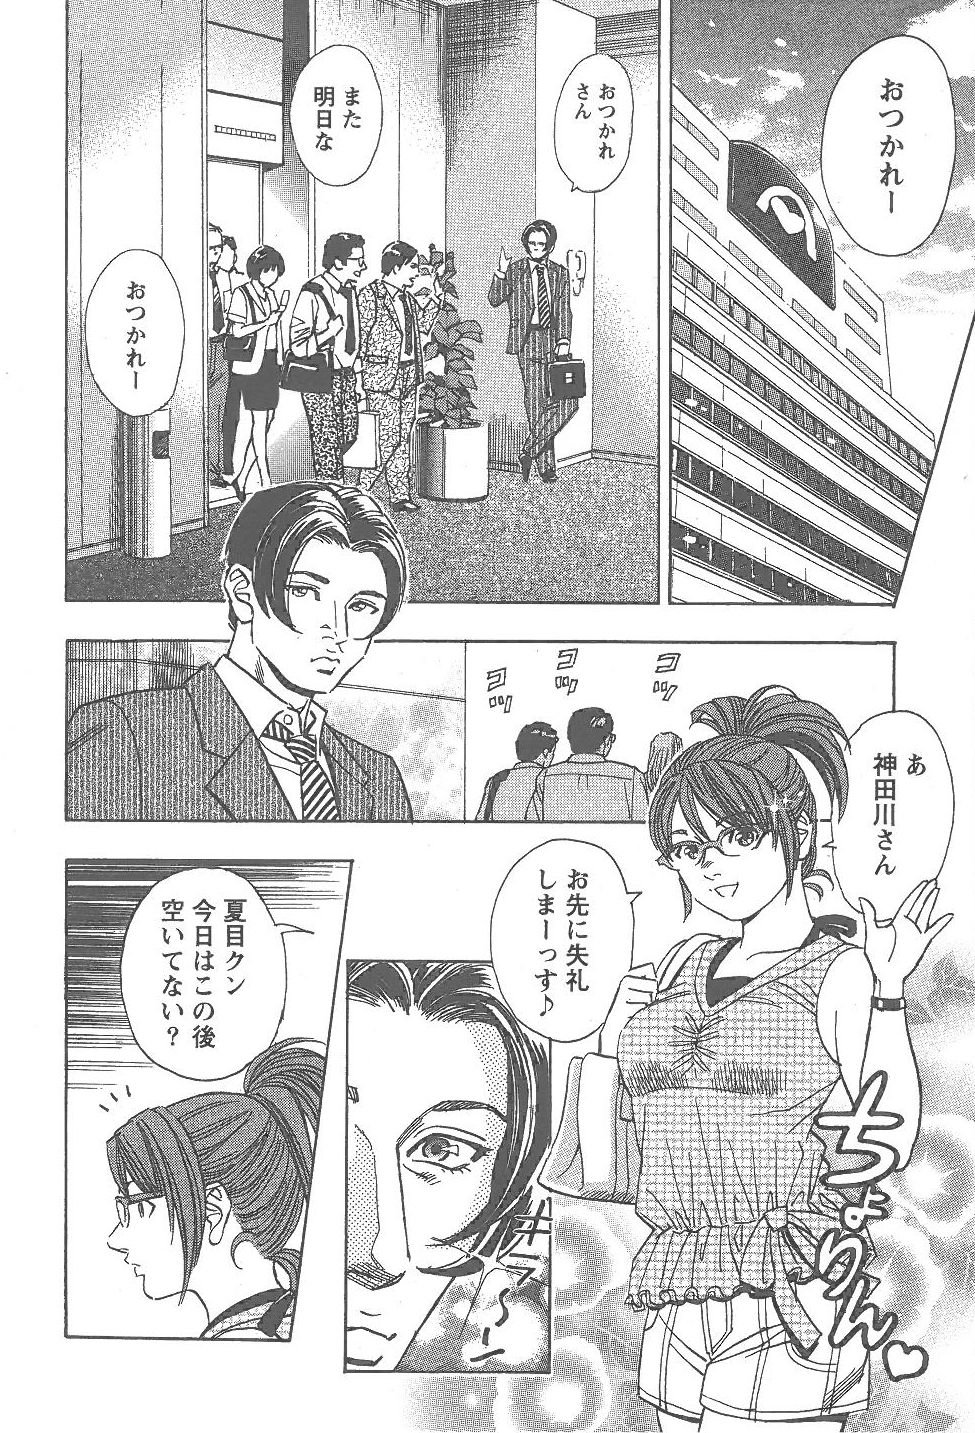 [Tomizawa Jun] Amakuchi Knight 02 page 7 full